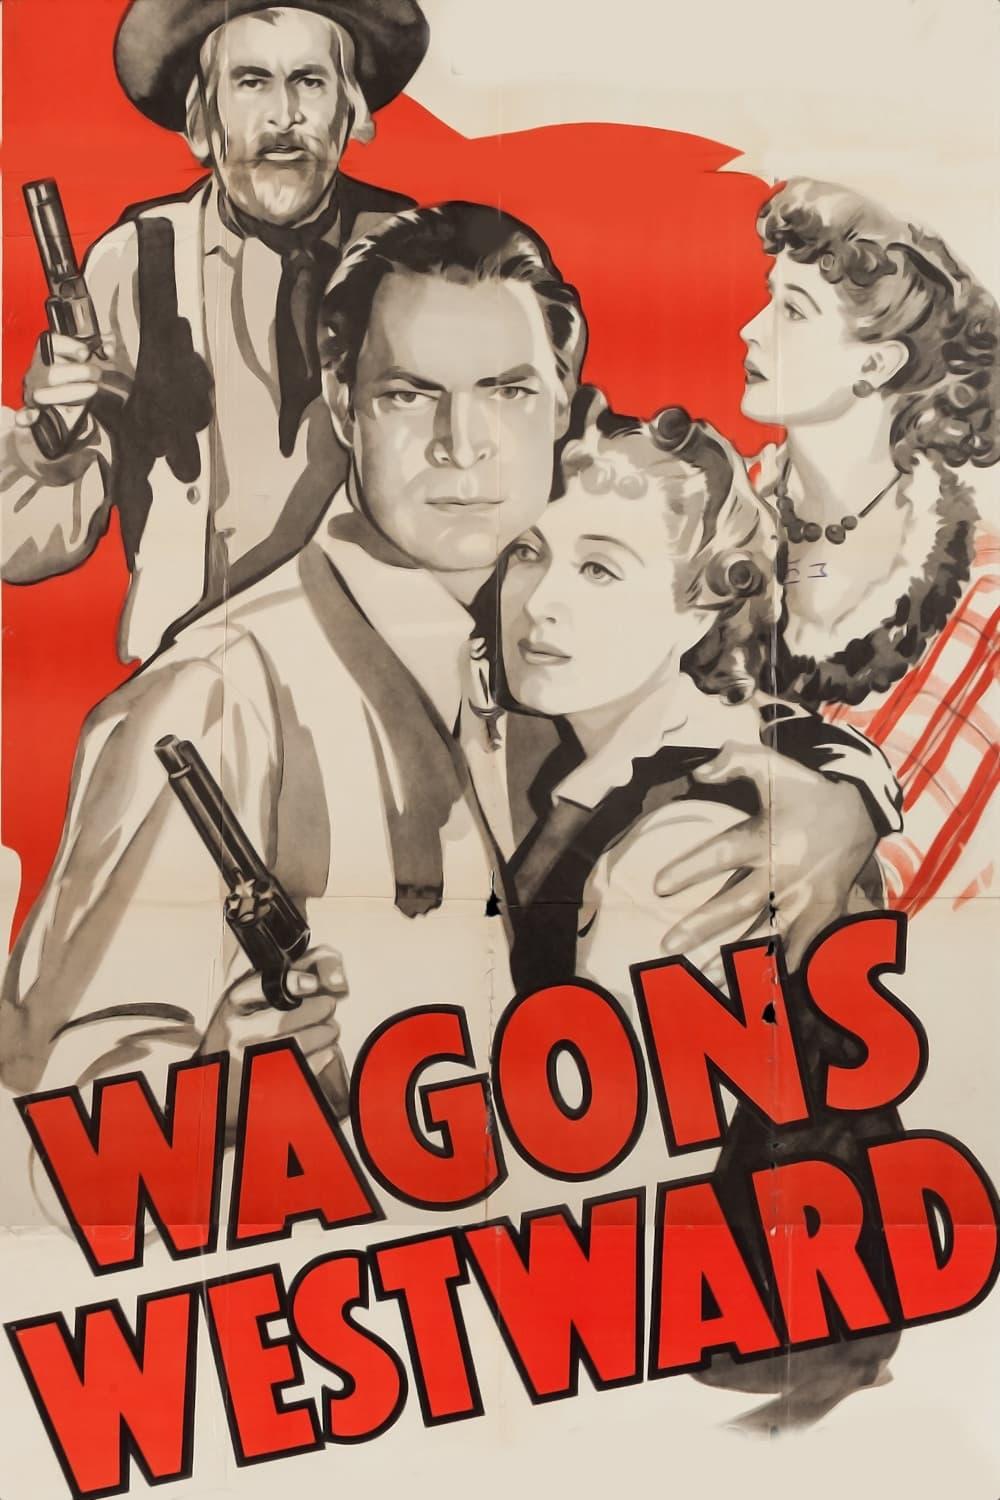 Wagons Westward poster